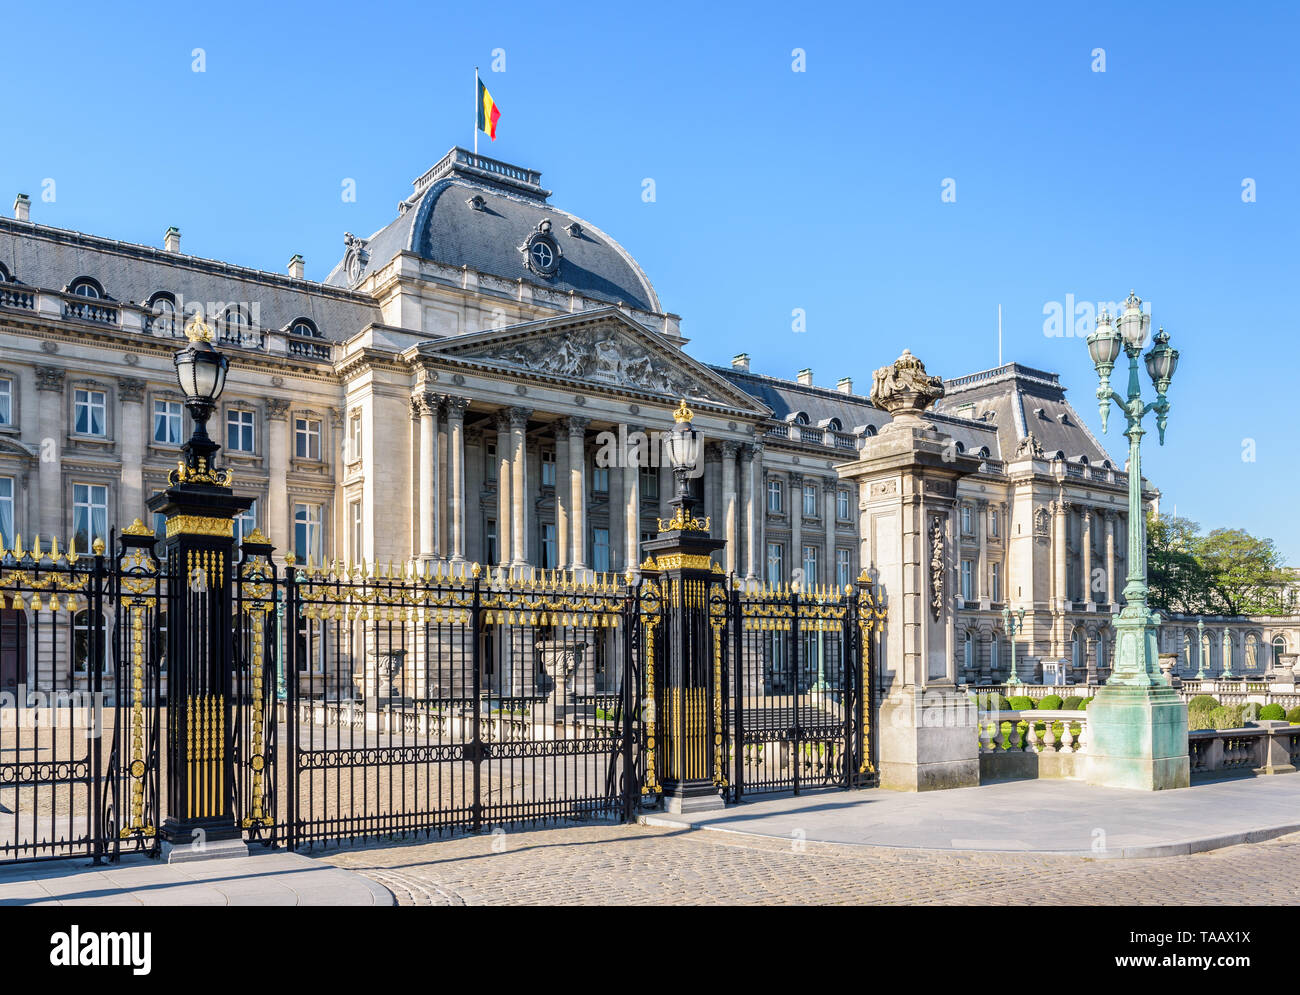 Grille et colonnade de la façade du Palais Royal de Bruxelles, le palais du Roi et Reine des Belges à Bruxelles, Belgique. Banque D'Images